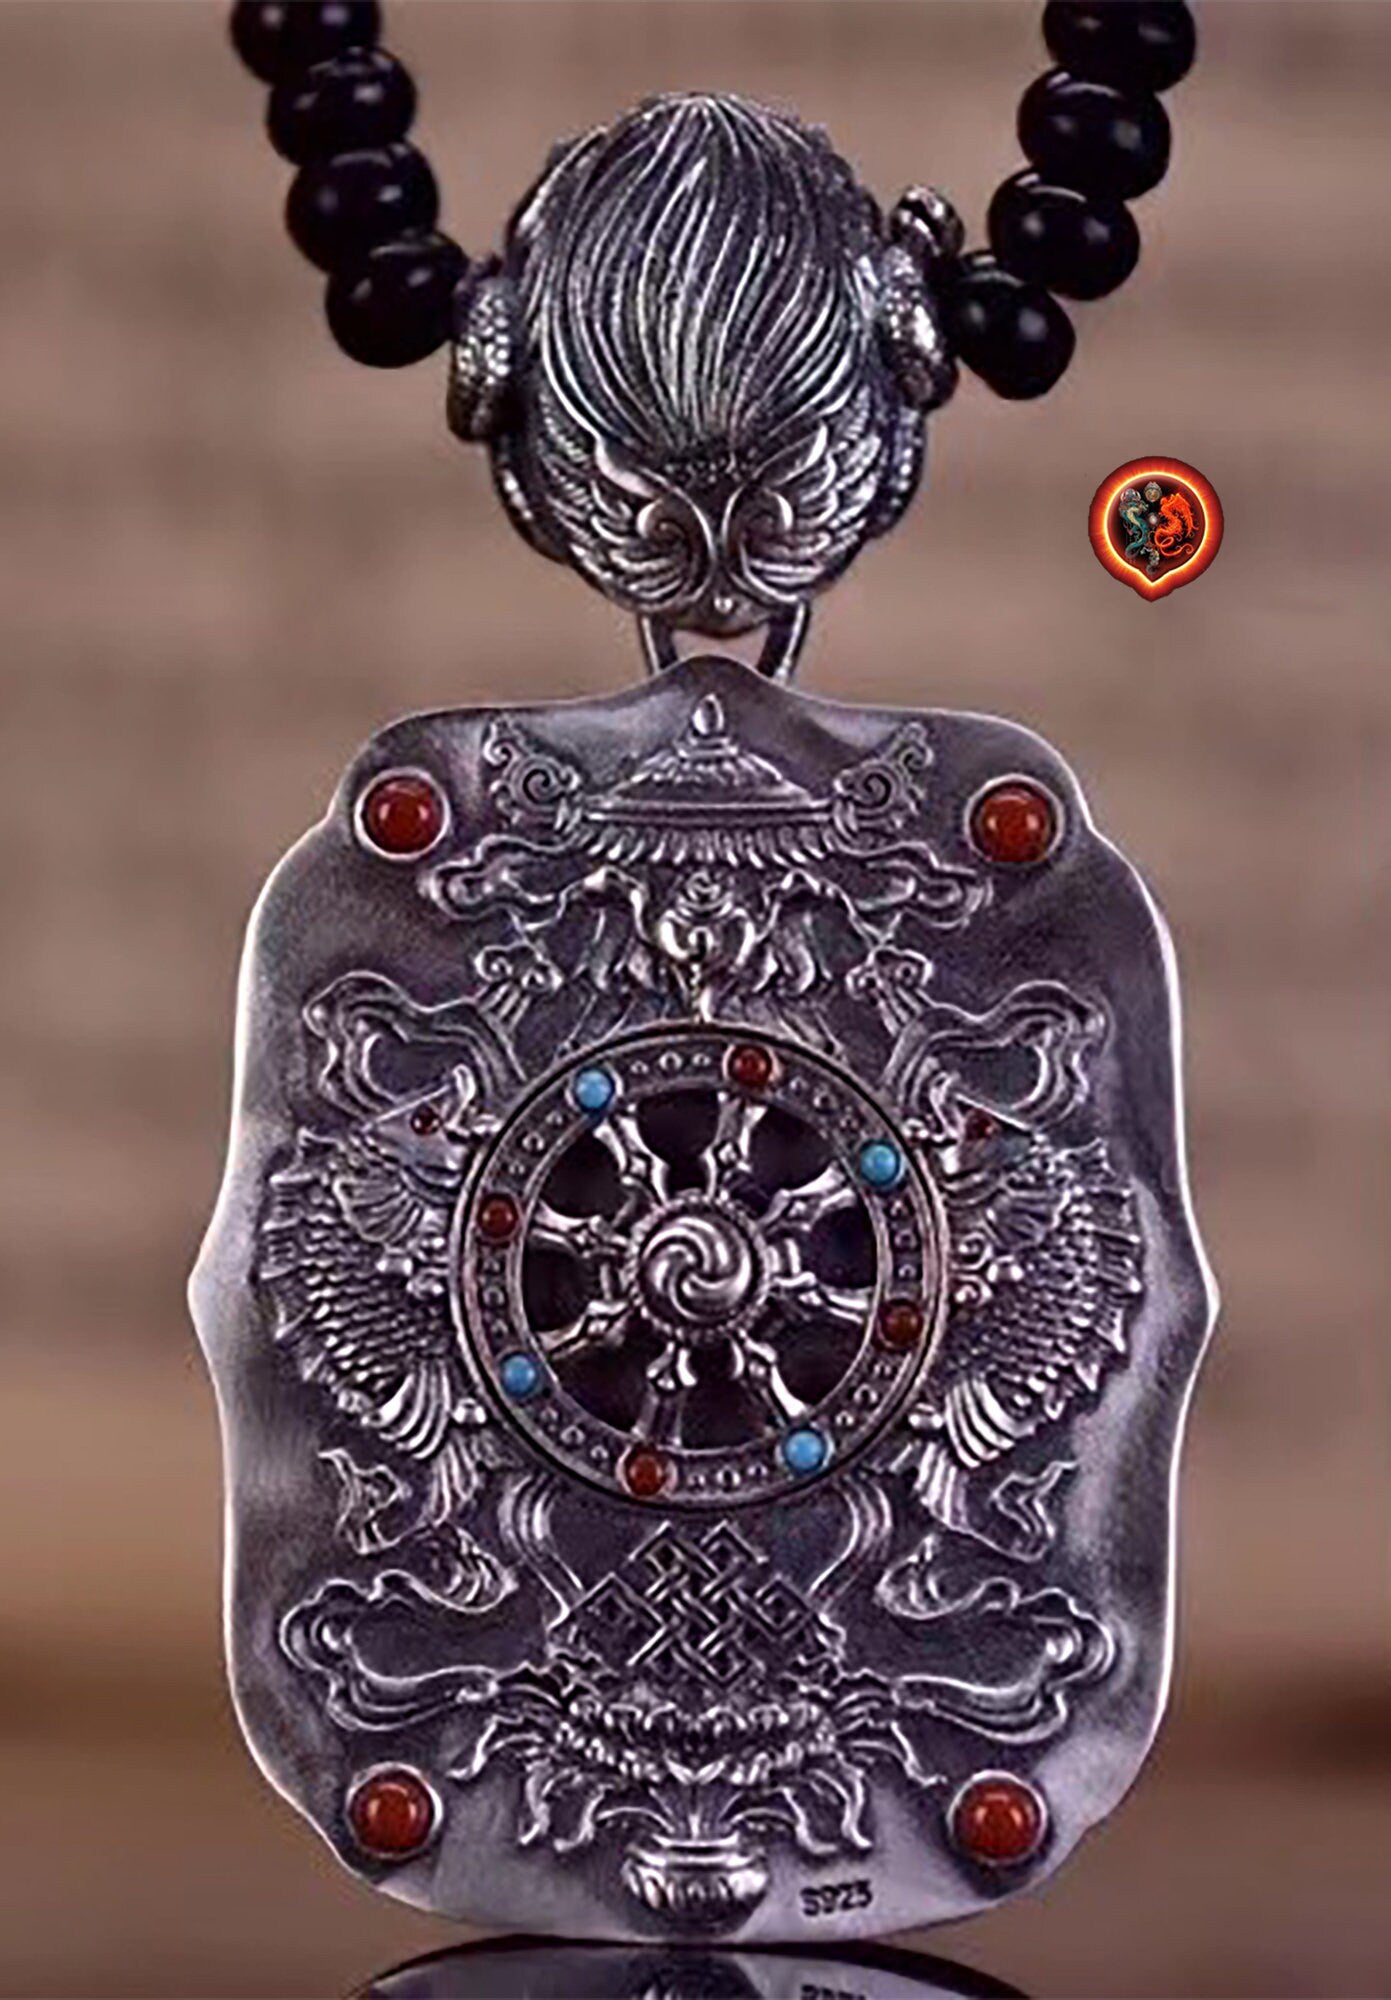 pendentif amulette de protection bouddhiste Bouddha Dizang/ Jizo mala de prière et méditation 108 perles, argent 925 or 18K bélière Garuda - obsidian dragon